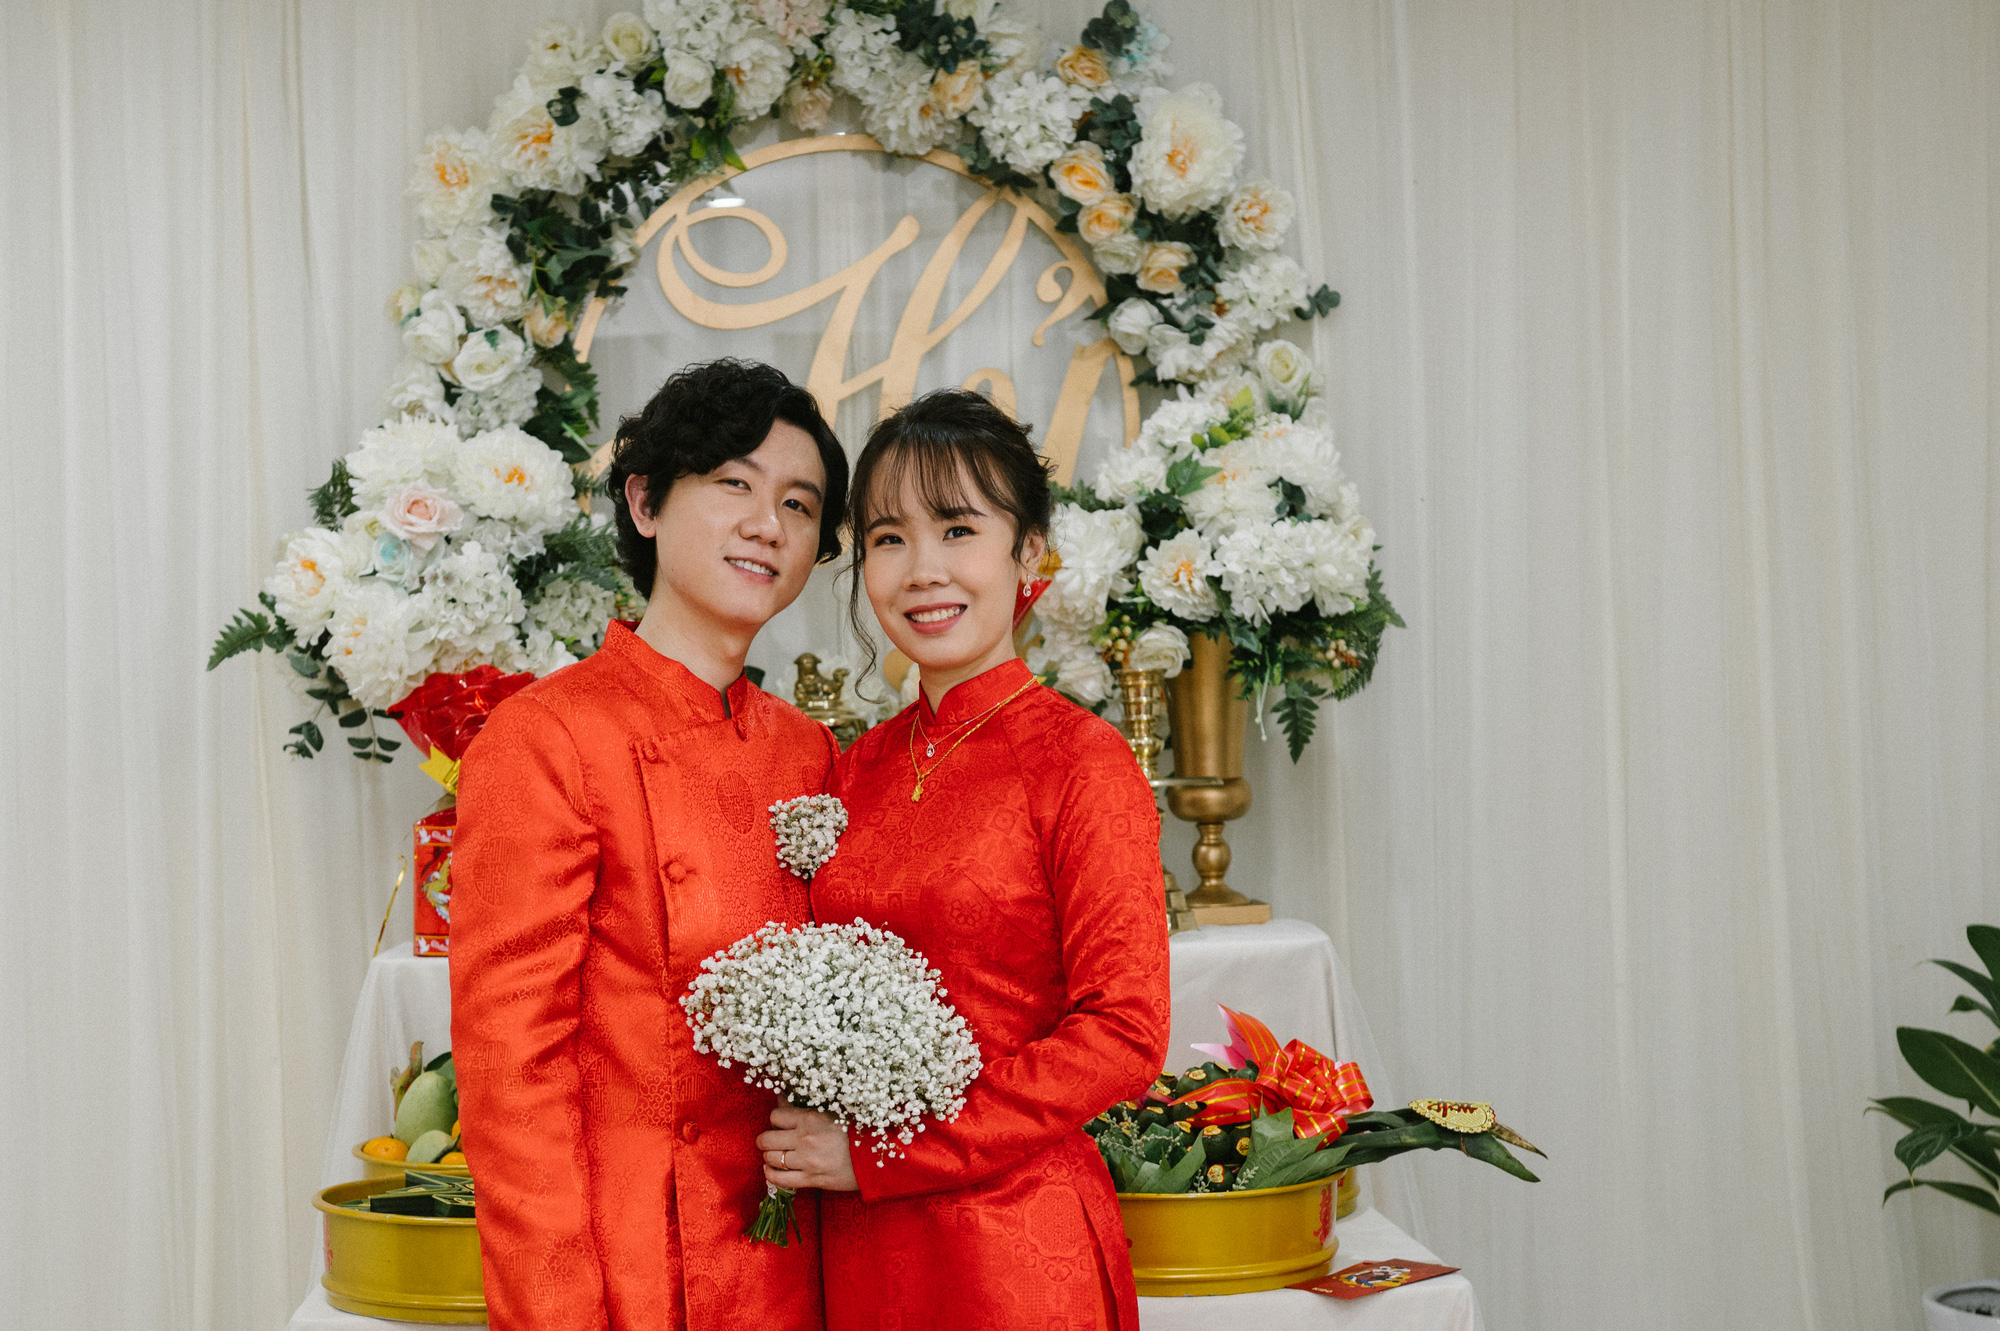 Tình yêu Việt - Hàn là điều đang gây sốt trên thế giới. Những hình ảnh đáng yêu của các cặp đôi Việt - Hàn sẽ khiến bạn tin vào tình yêu và niềm tin đẹp đẽ trong cuộc sống.